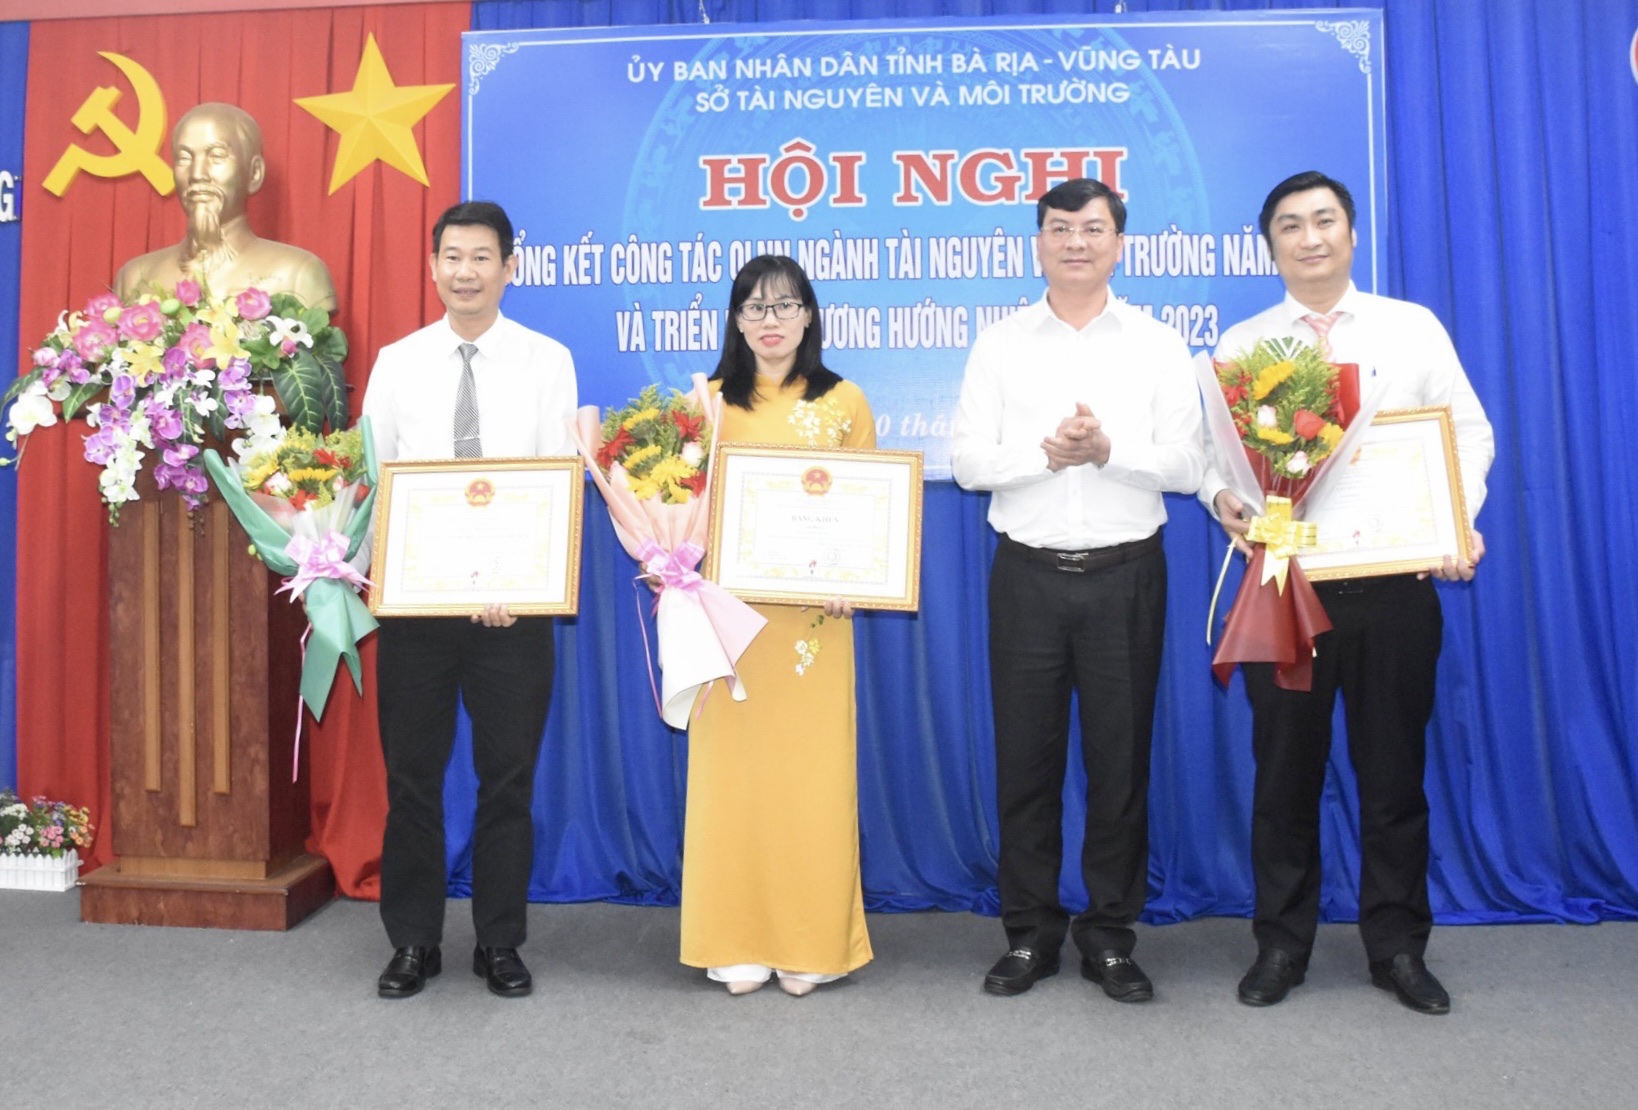 Phó Chủ tịch UBND tỉnh Nguyễn Công Vinh trao Bằng khen của UBND tỉnh cho 2 tập thể có thành tích tiêu biểu xuất sắc trong công tác TN-MT từ năm 2021-2022 và tặng danh hiệu tập thể lao động xuất sắc cho 1 tập thể.